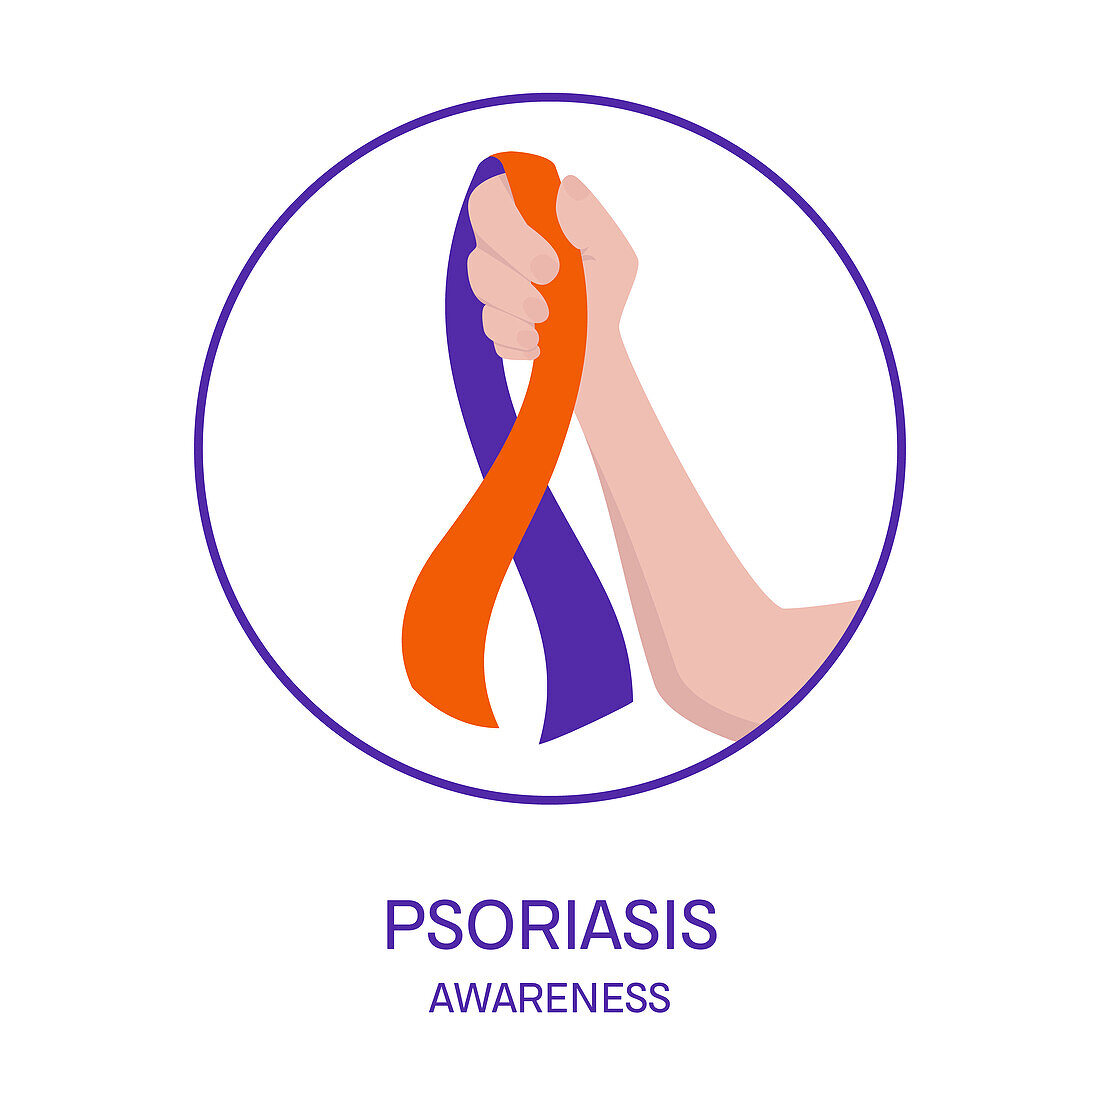 Psoriasis awareness, conceptual illustration